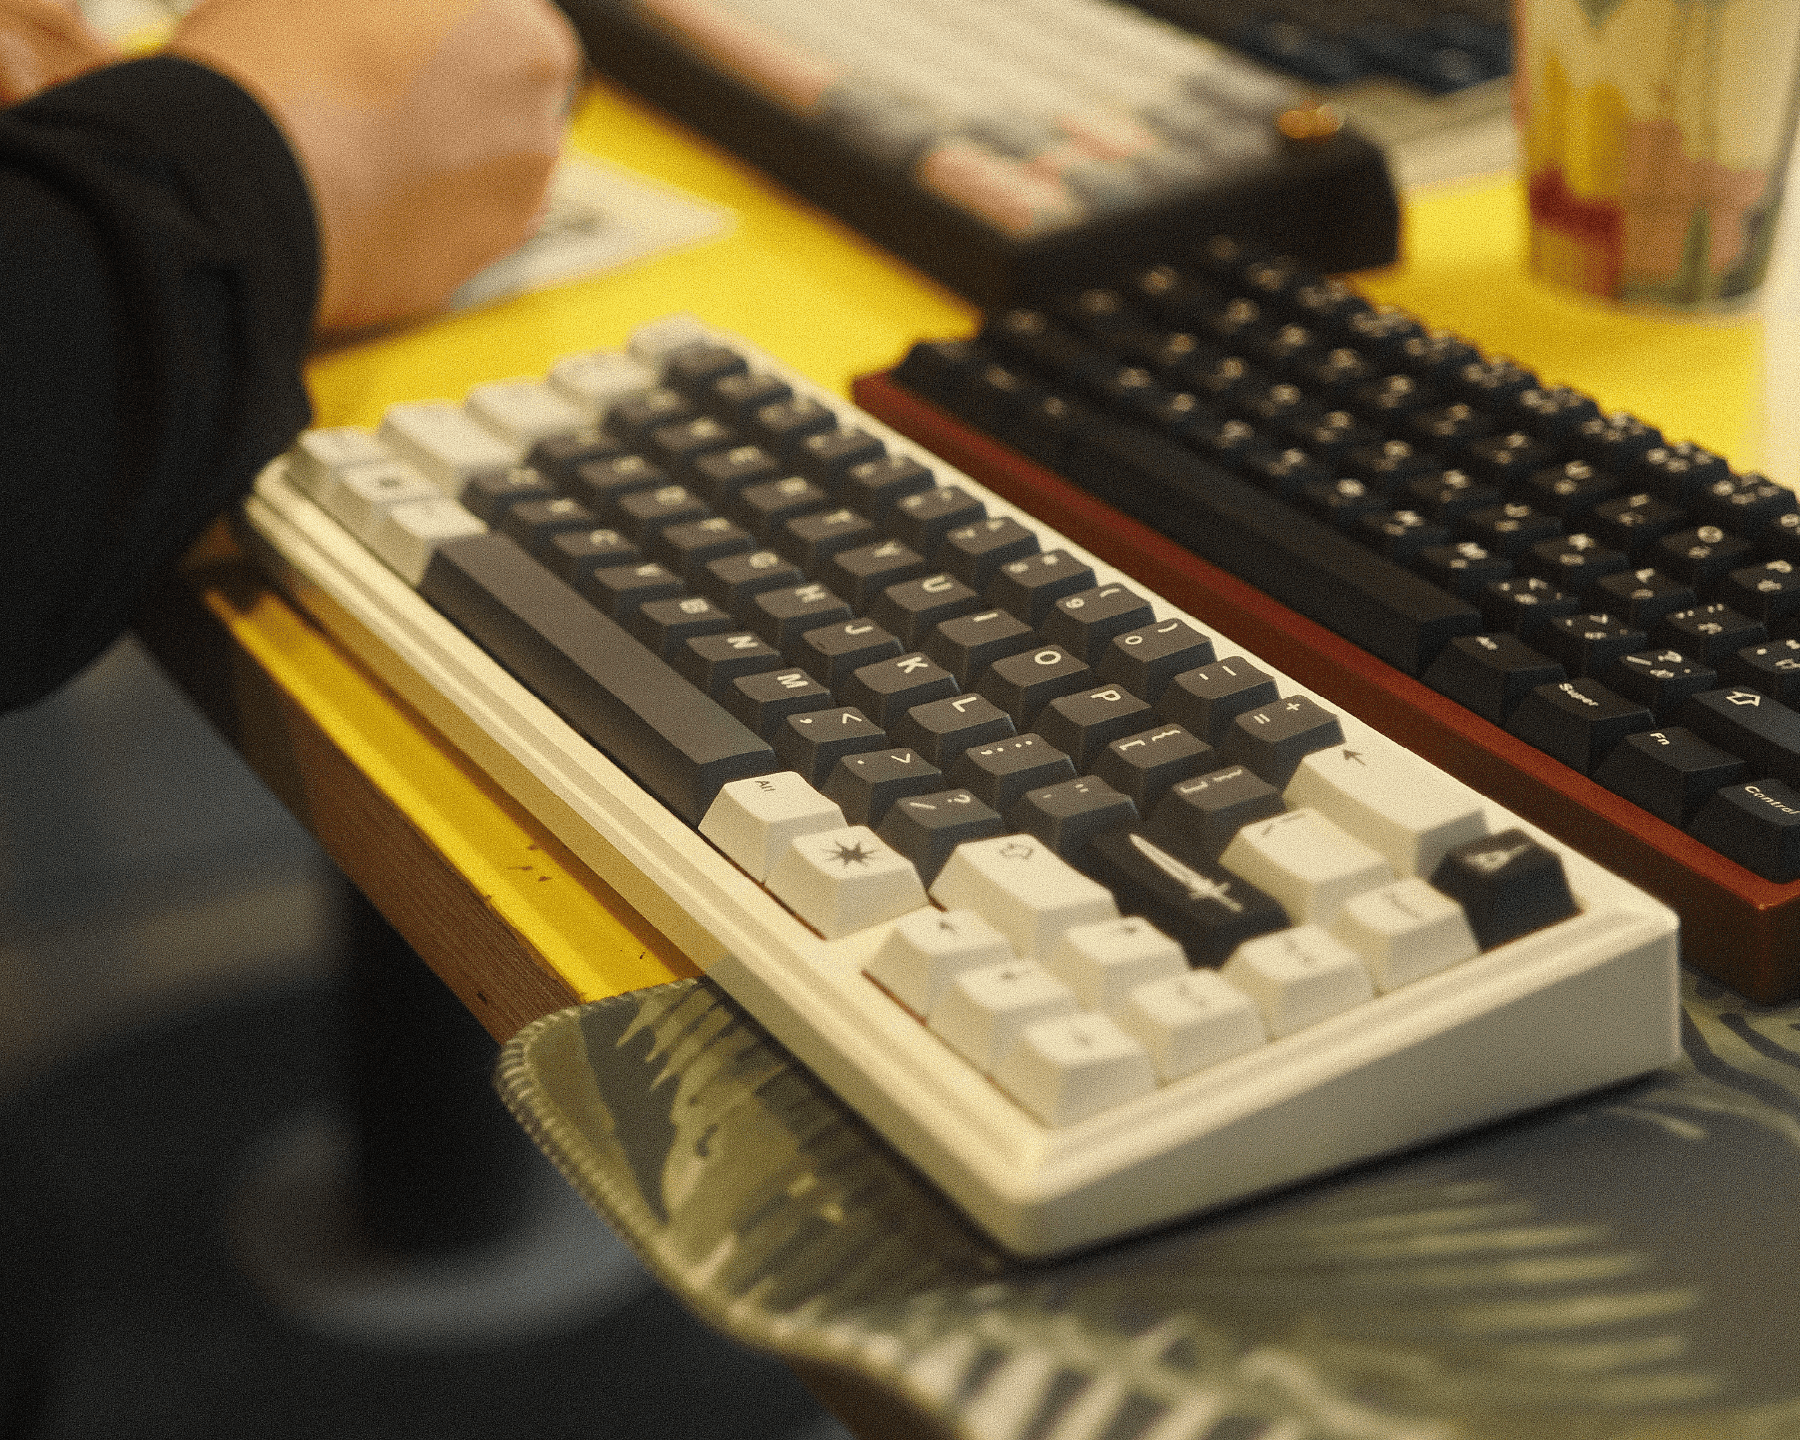 Third meetup close up of Ginko65 keyboard